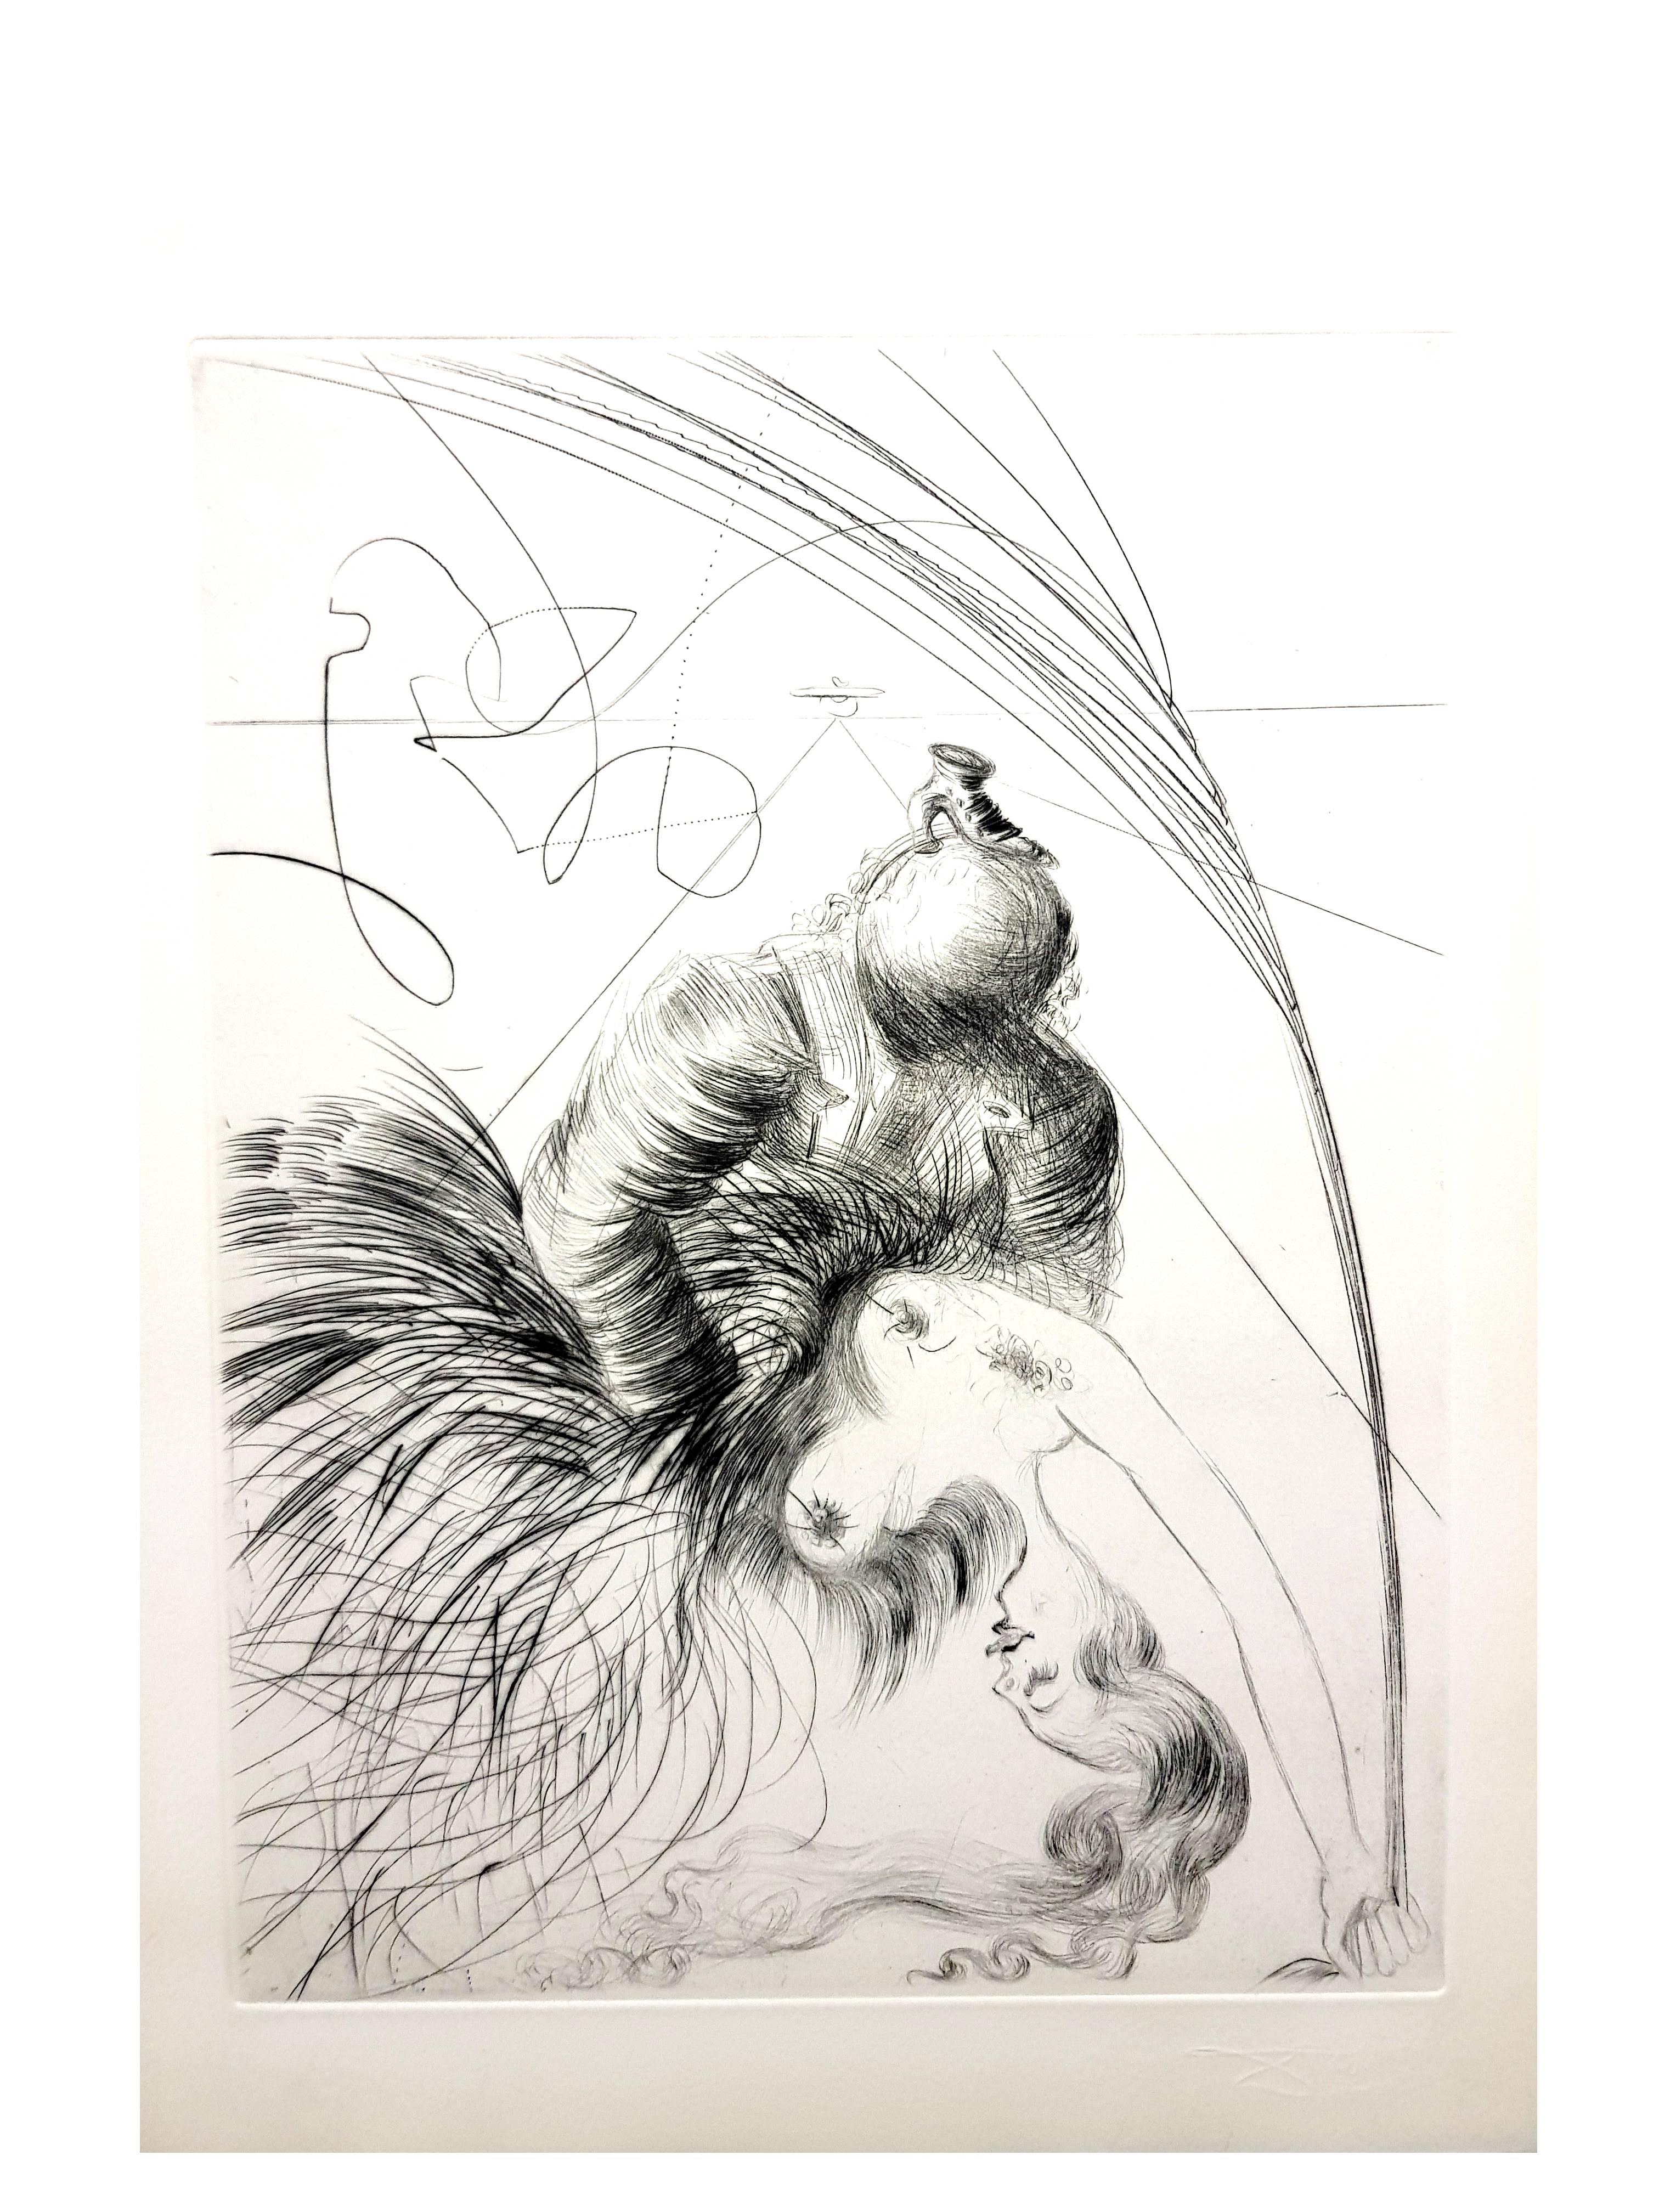 Salvador Dali - Die Frau mit dem Schuh - Original Stempel-Signierte Radierung
Von Dali signierter Stempel
Auflage von 294 Exemplaren. 
Papier : Pergamentbogen. 
Abmessungen: 16x12